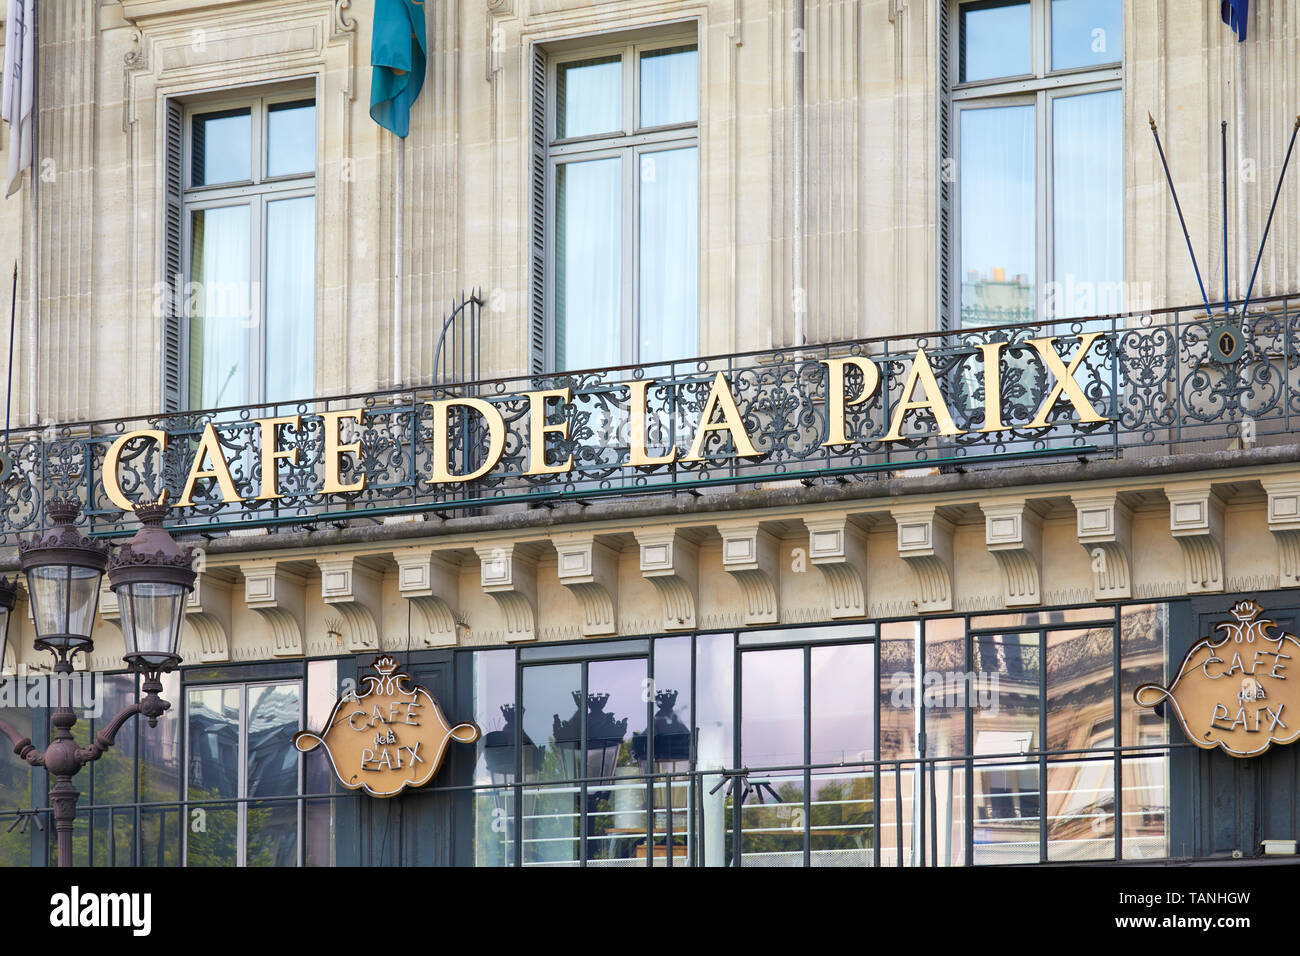 PARIS, FRANCE - JULY 22, 2017: Famous Cafe de la Paix sign in golden letters in Paris, France Stock Photo